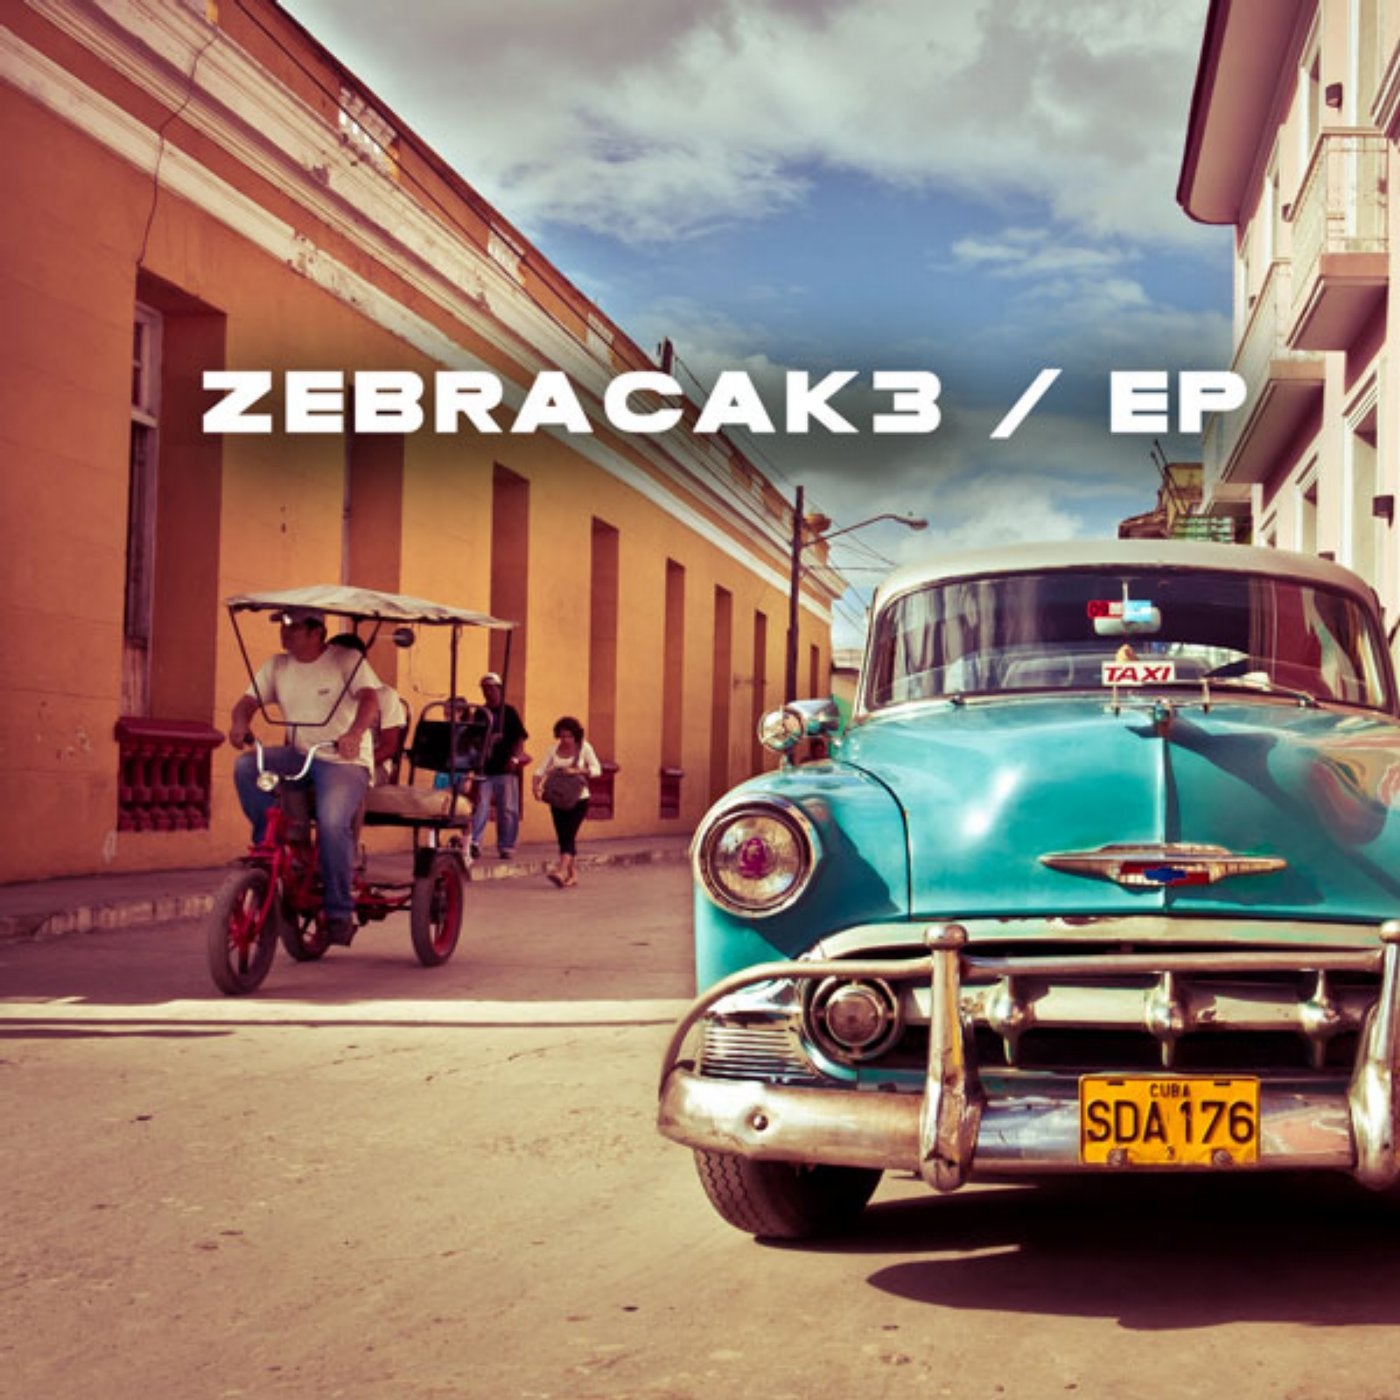 ZebraCak3 EP